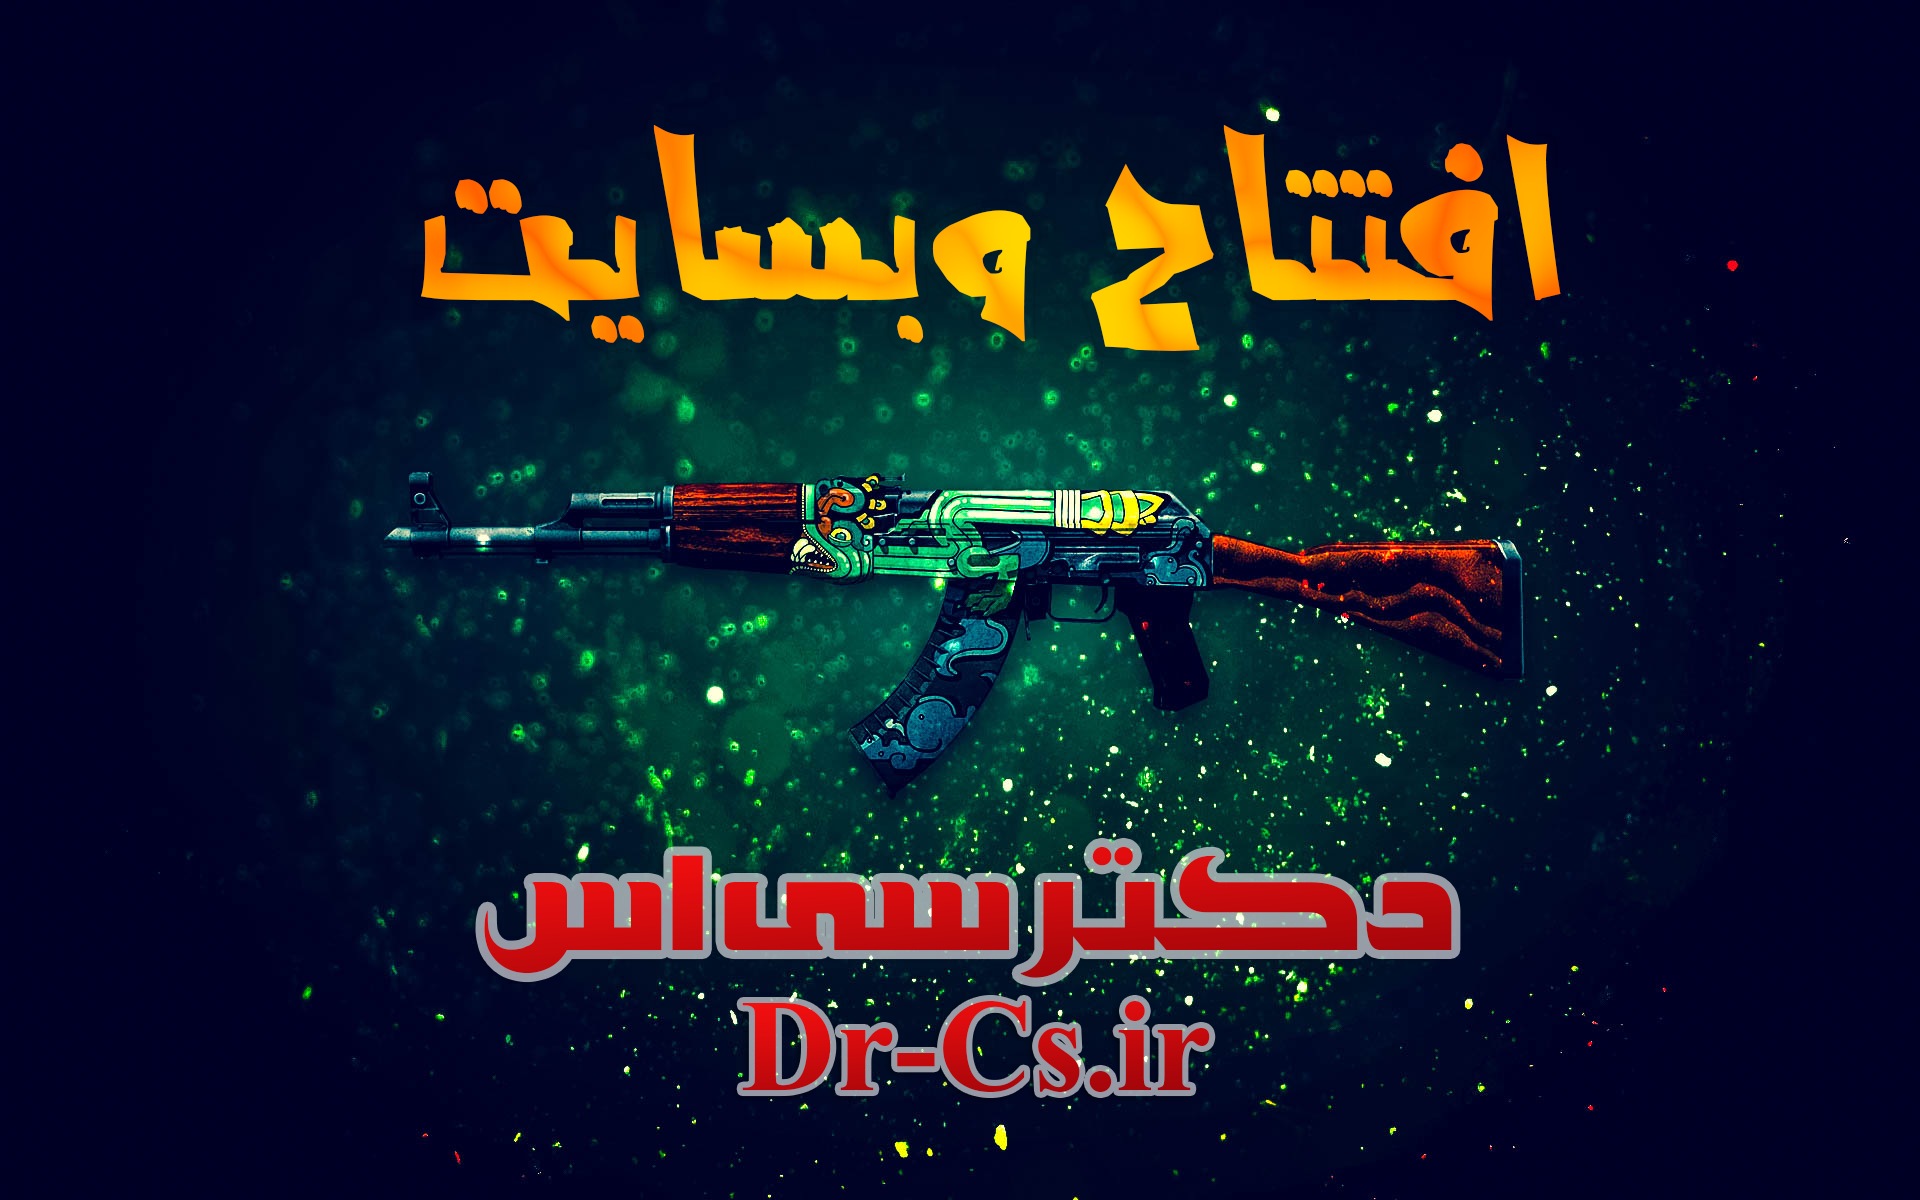 افتتاح وبسایت دکتر سیــــ اســــ 